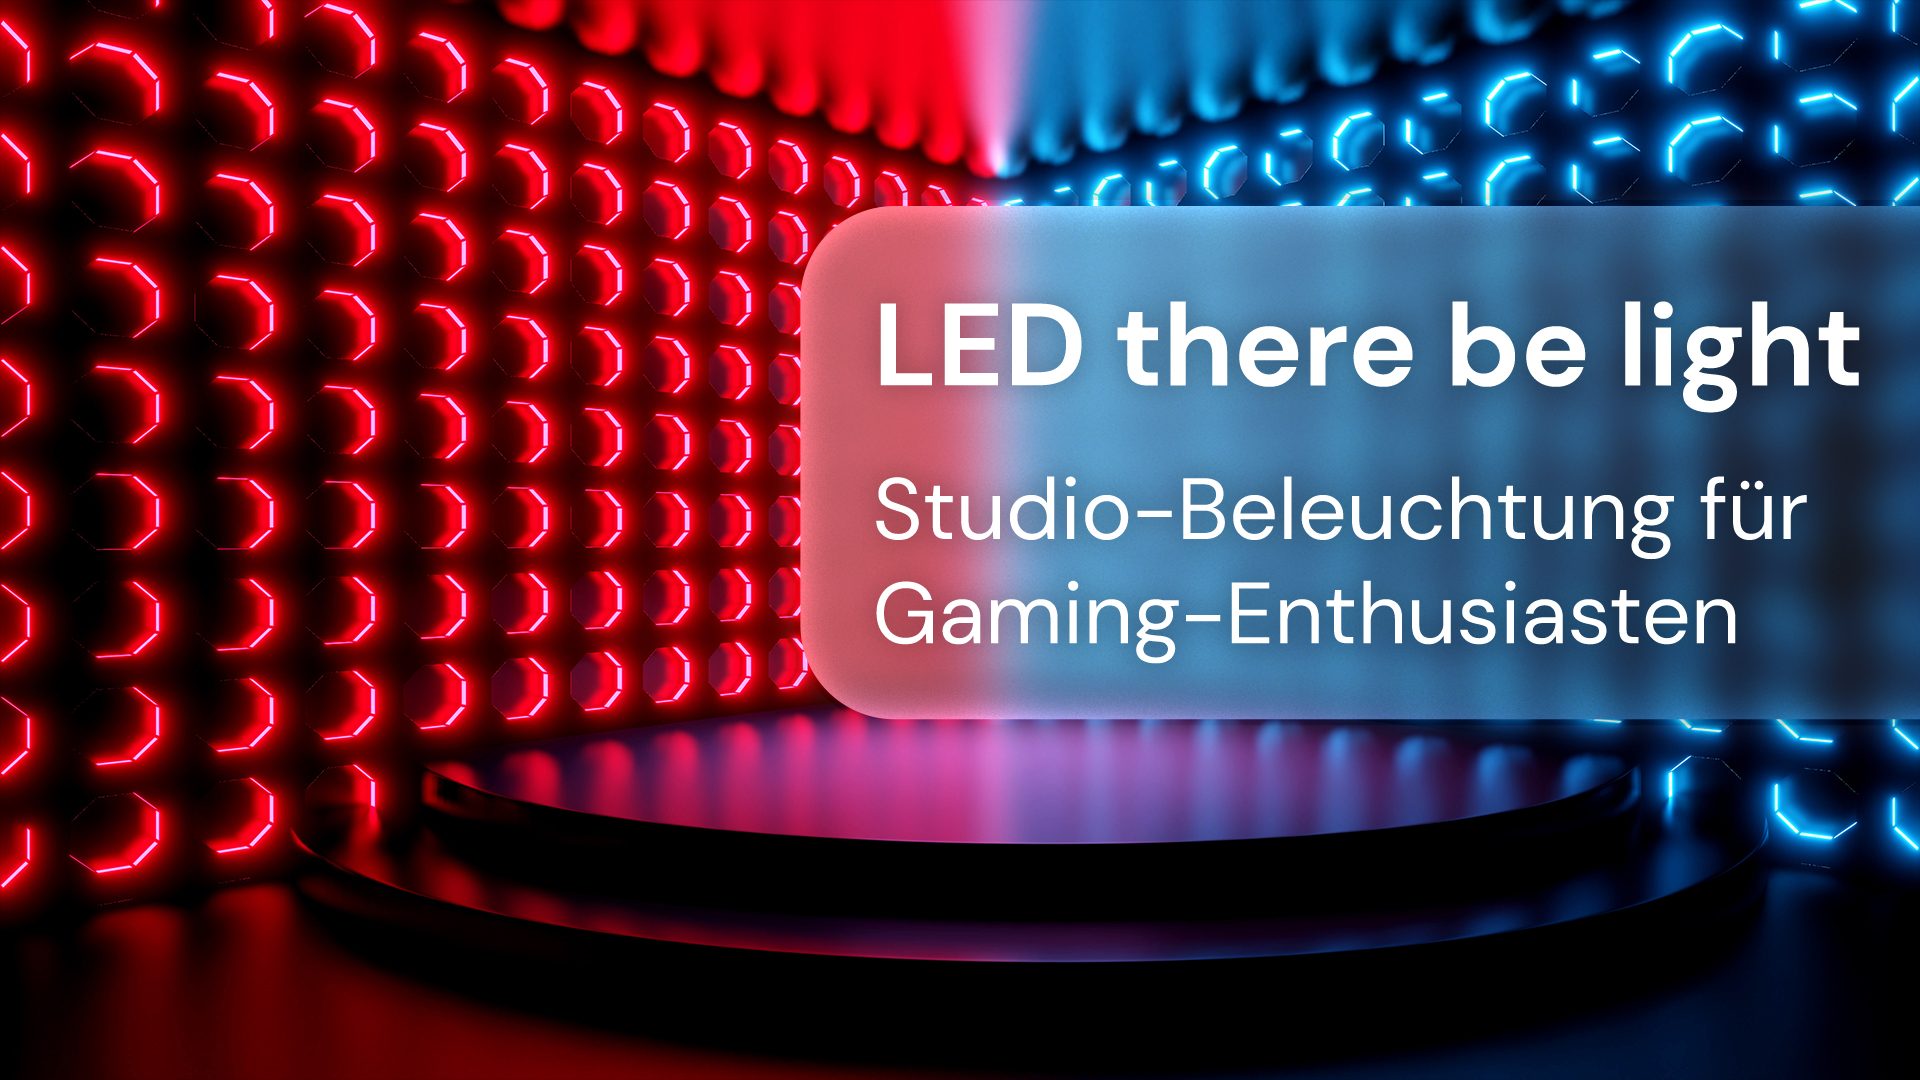 Gaming-Enthusiasten Studio-Beleuchtung für @